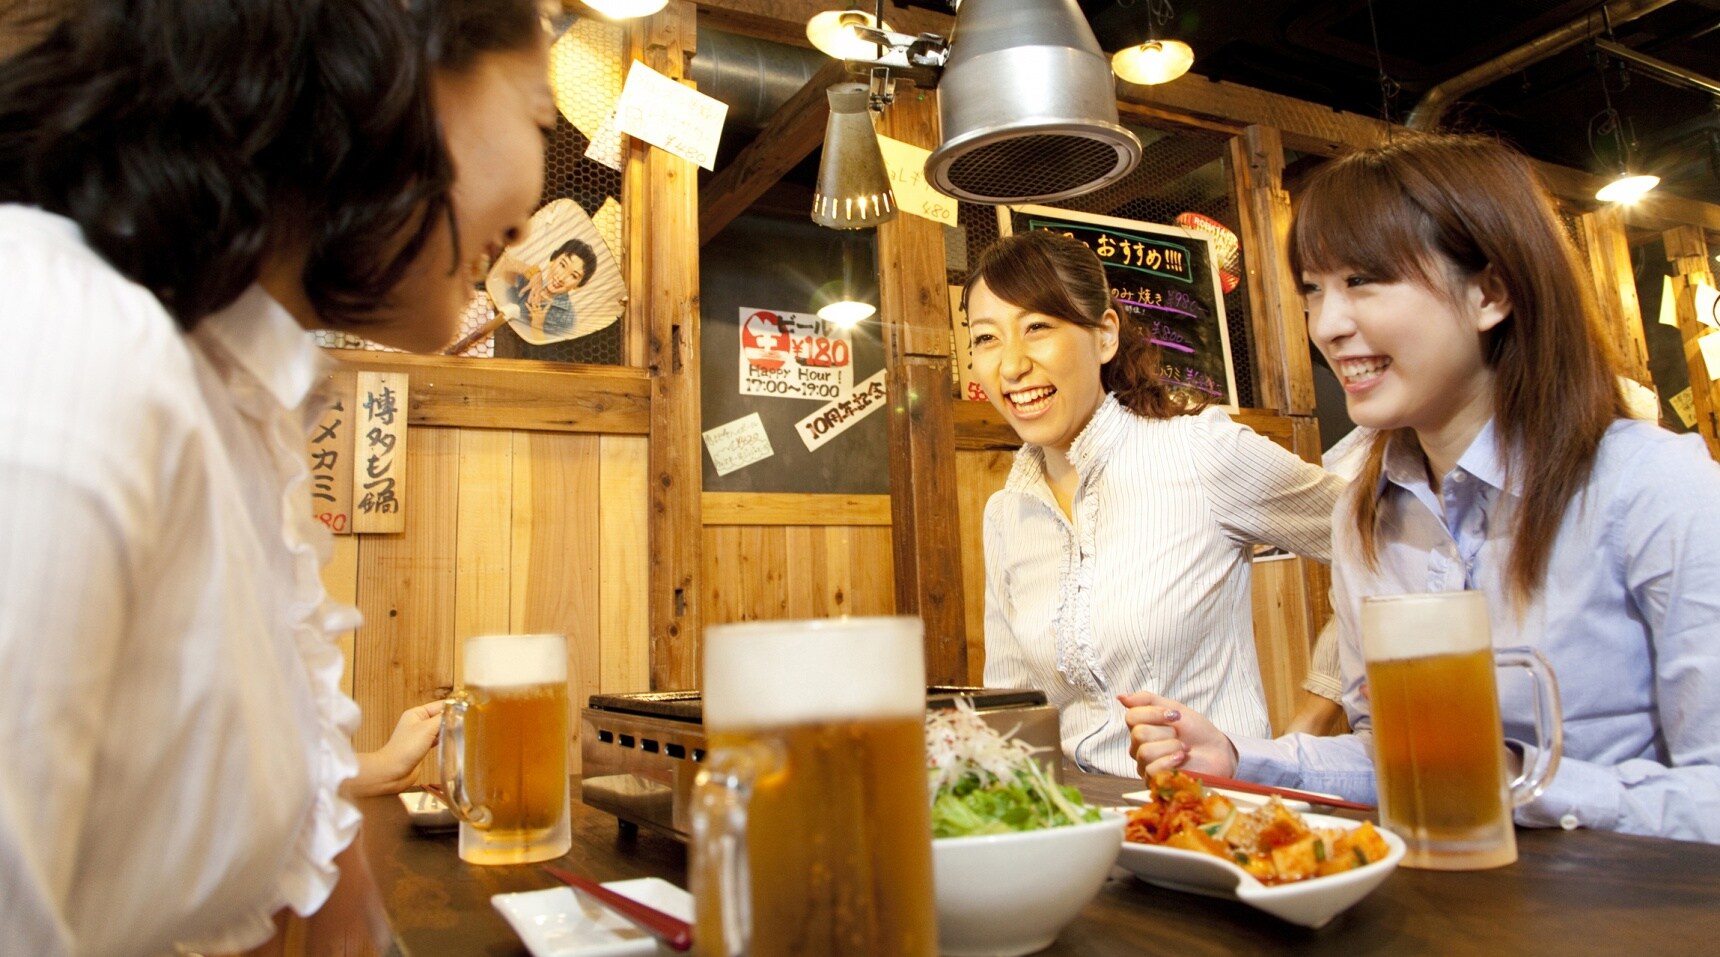 6 มารยาทน่ารู้ในการดื่มกับคนญี่ปุ่น